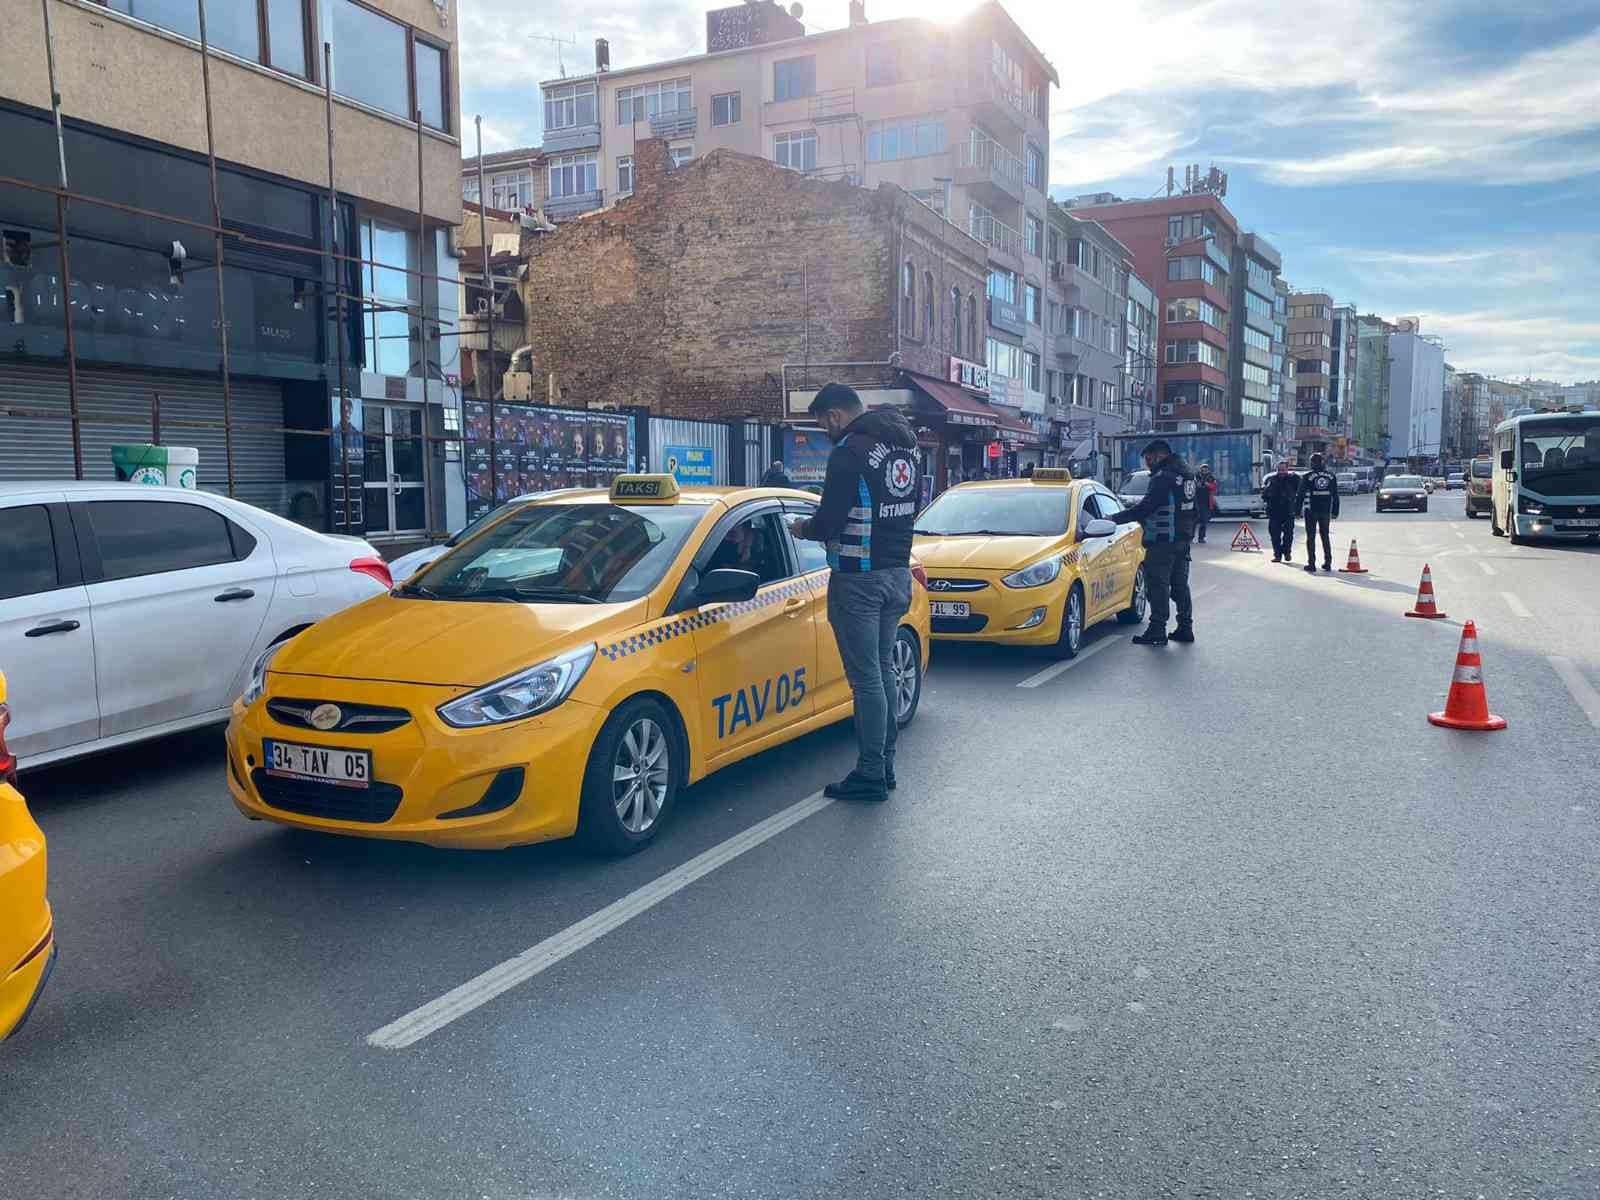 Kadıköy’de taksicilere yeni yılın ilk iş gününde ceza yağdı #istanbul